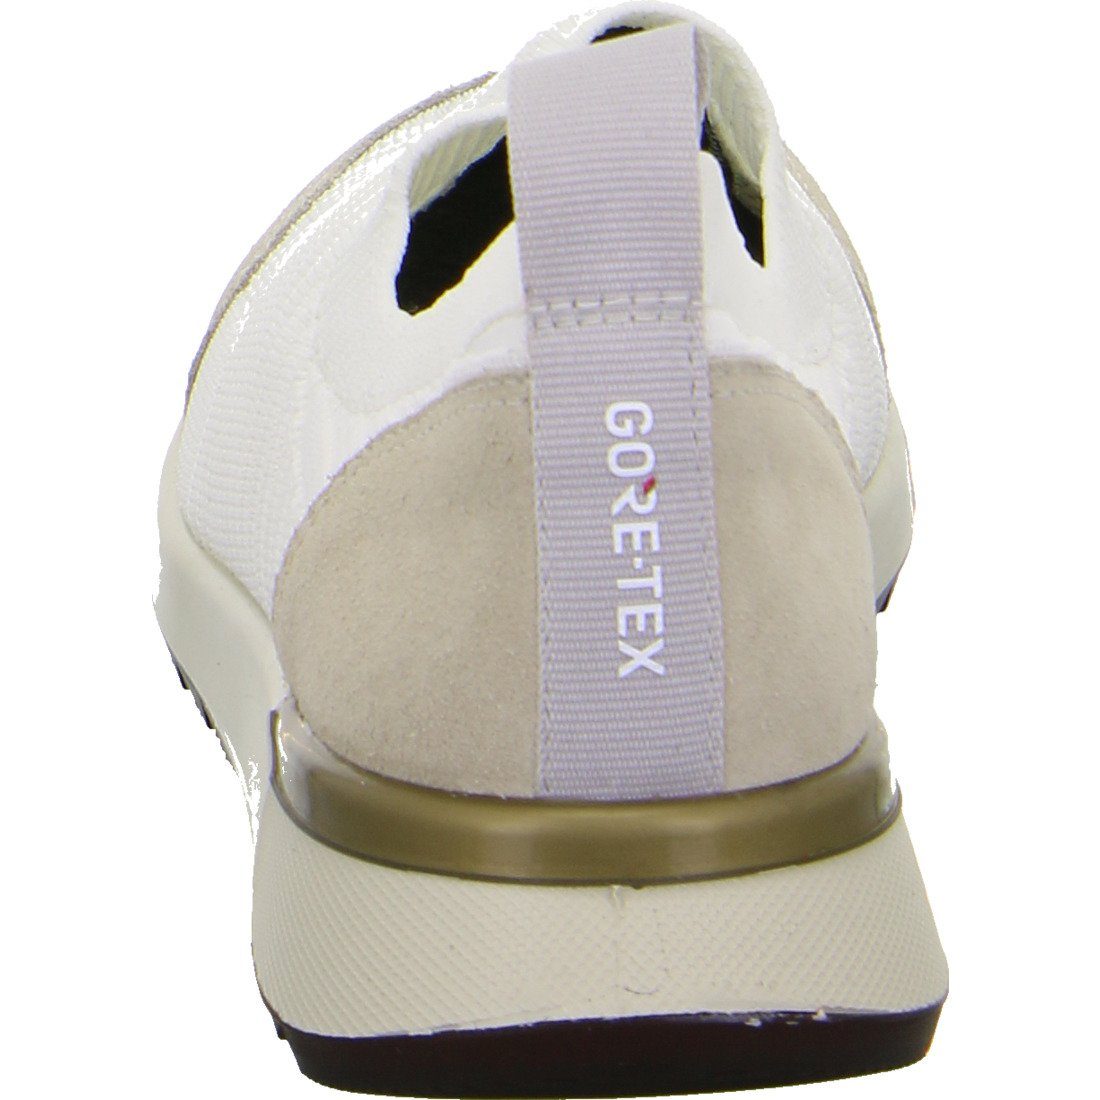 048187 Textil Schuhe, Slipper Damen Venice Ara Ara Slipper beige -